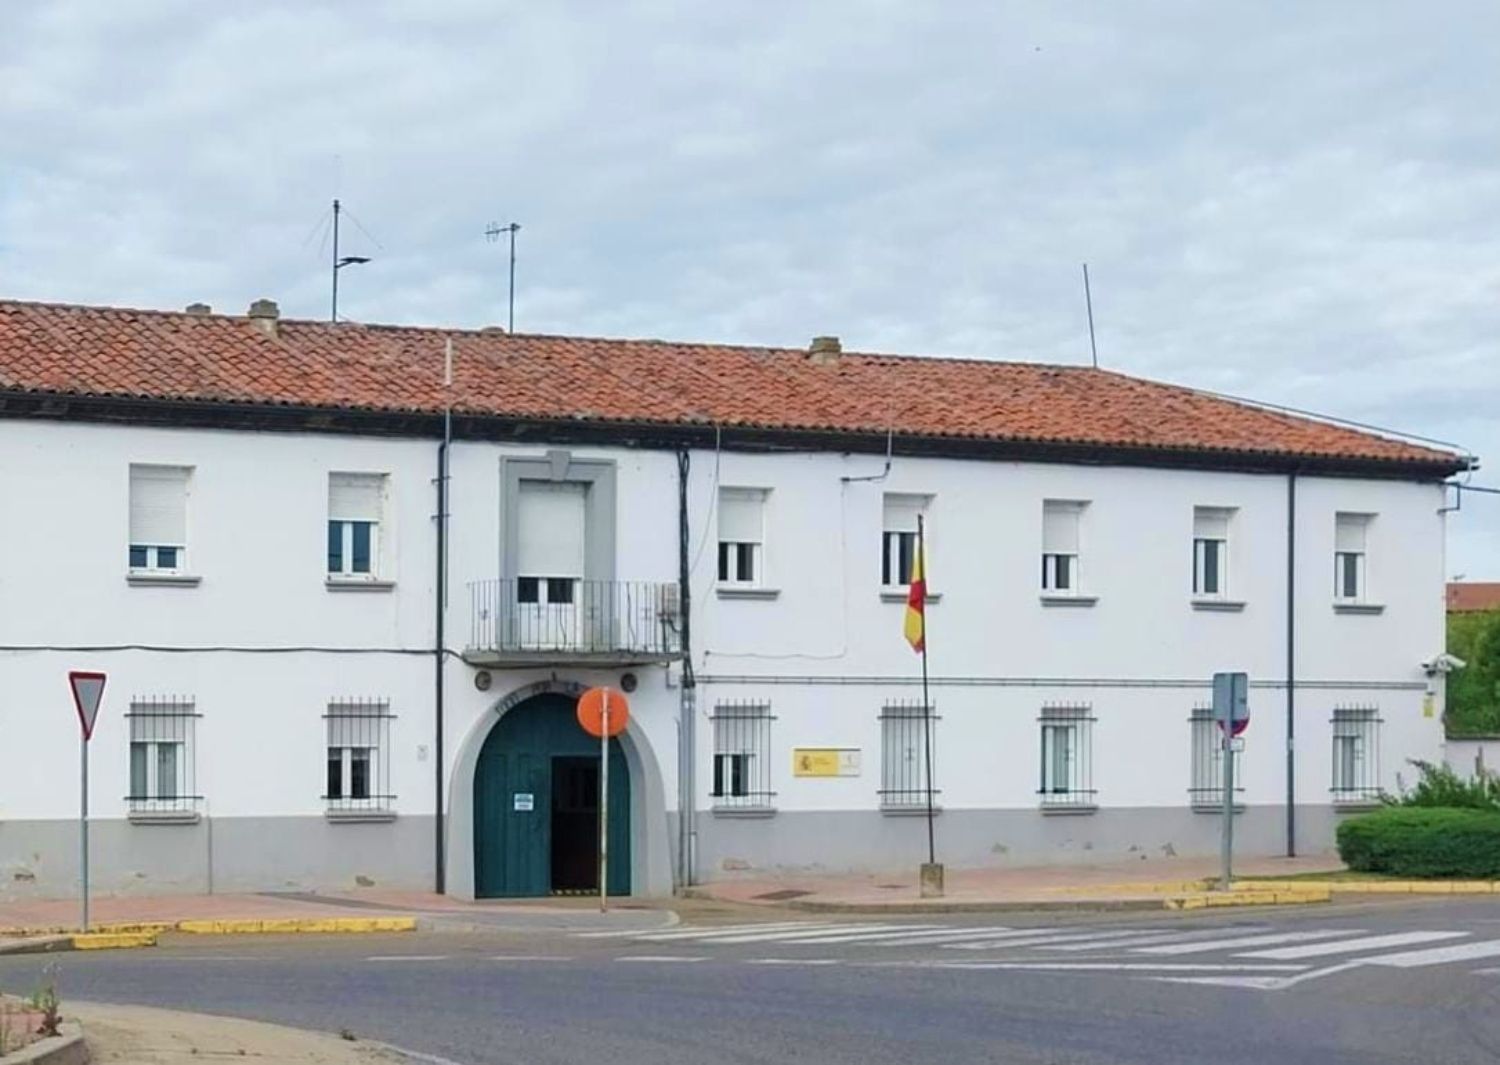 Cuartel de la Guardia Civil Valencia de Don Juan